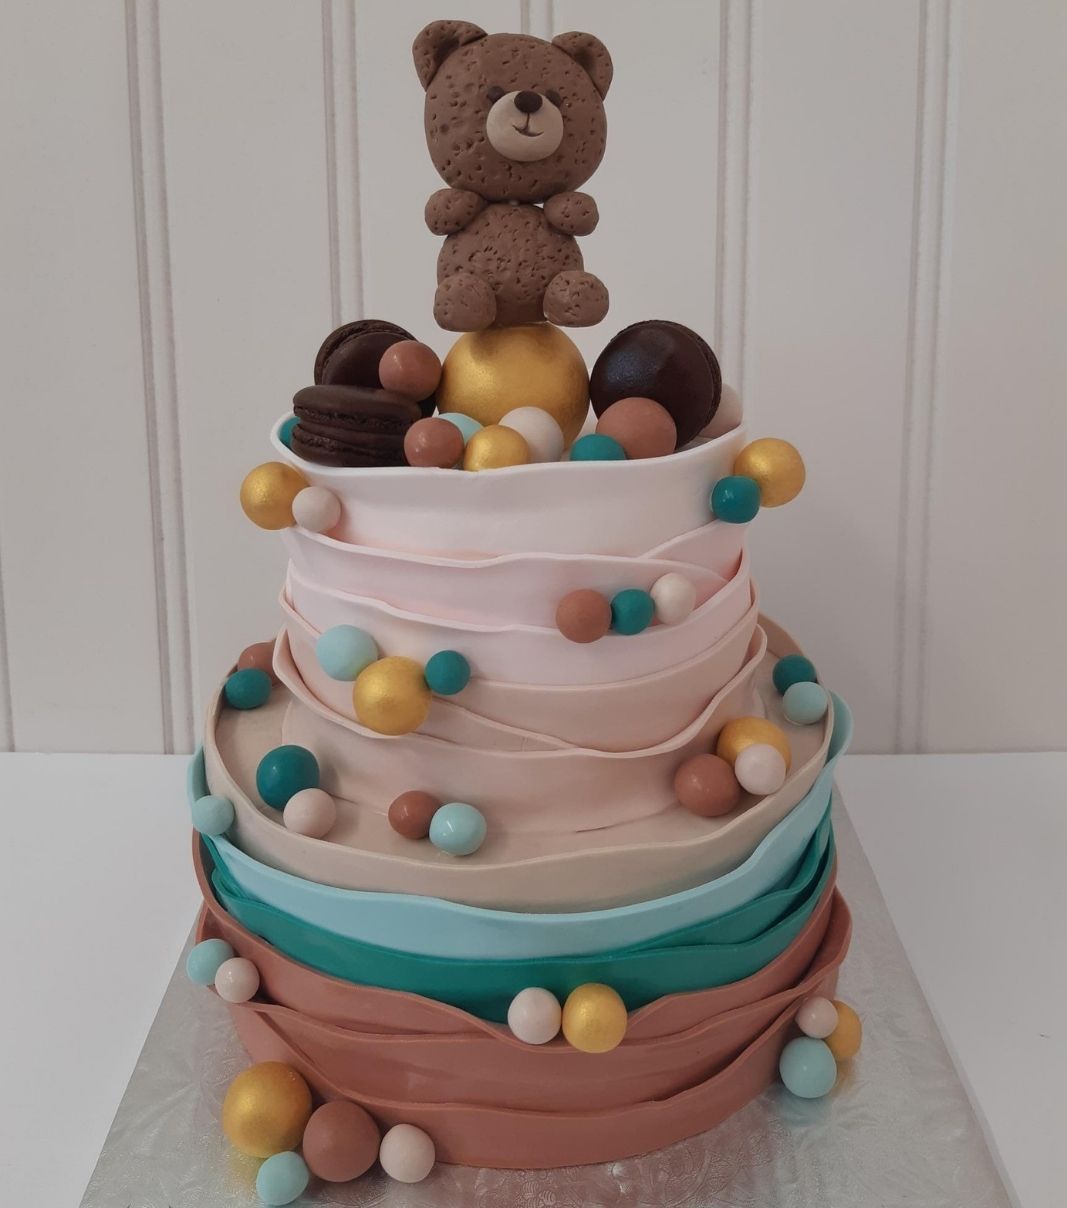 Gâteau shower de bébé: gâteau de 2 étages avec une couverture au fondant texturée en bandelettes dégradées de couleurs et décoré d'une figurine d'ourson, de macarons et de boules au fondant roses, dorées, terracotta et turquoises.